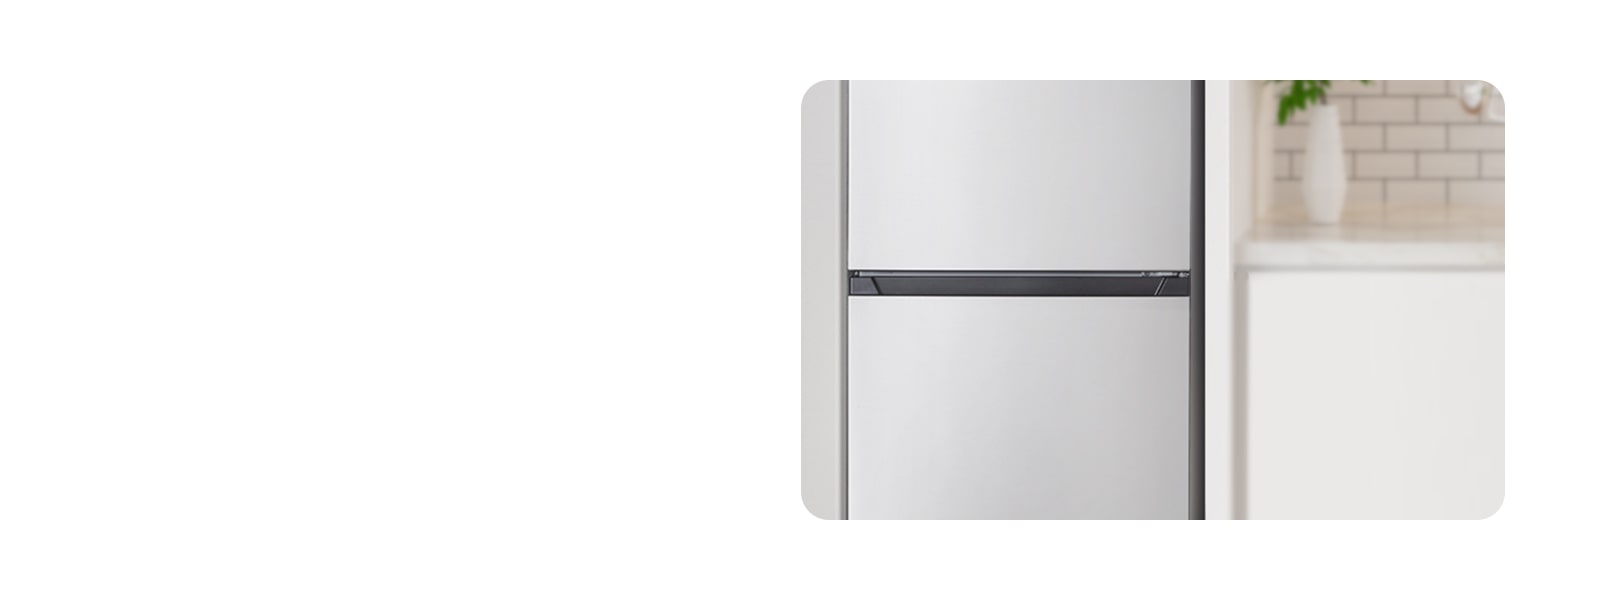 Interiörbild som visar kylskåpet